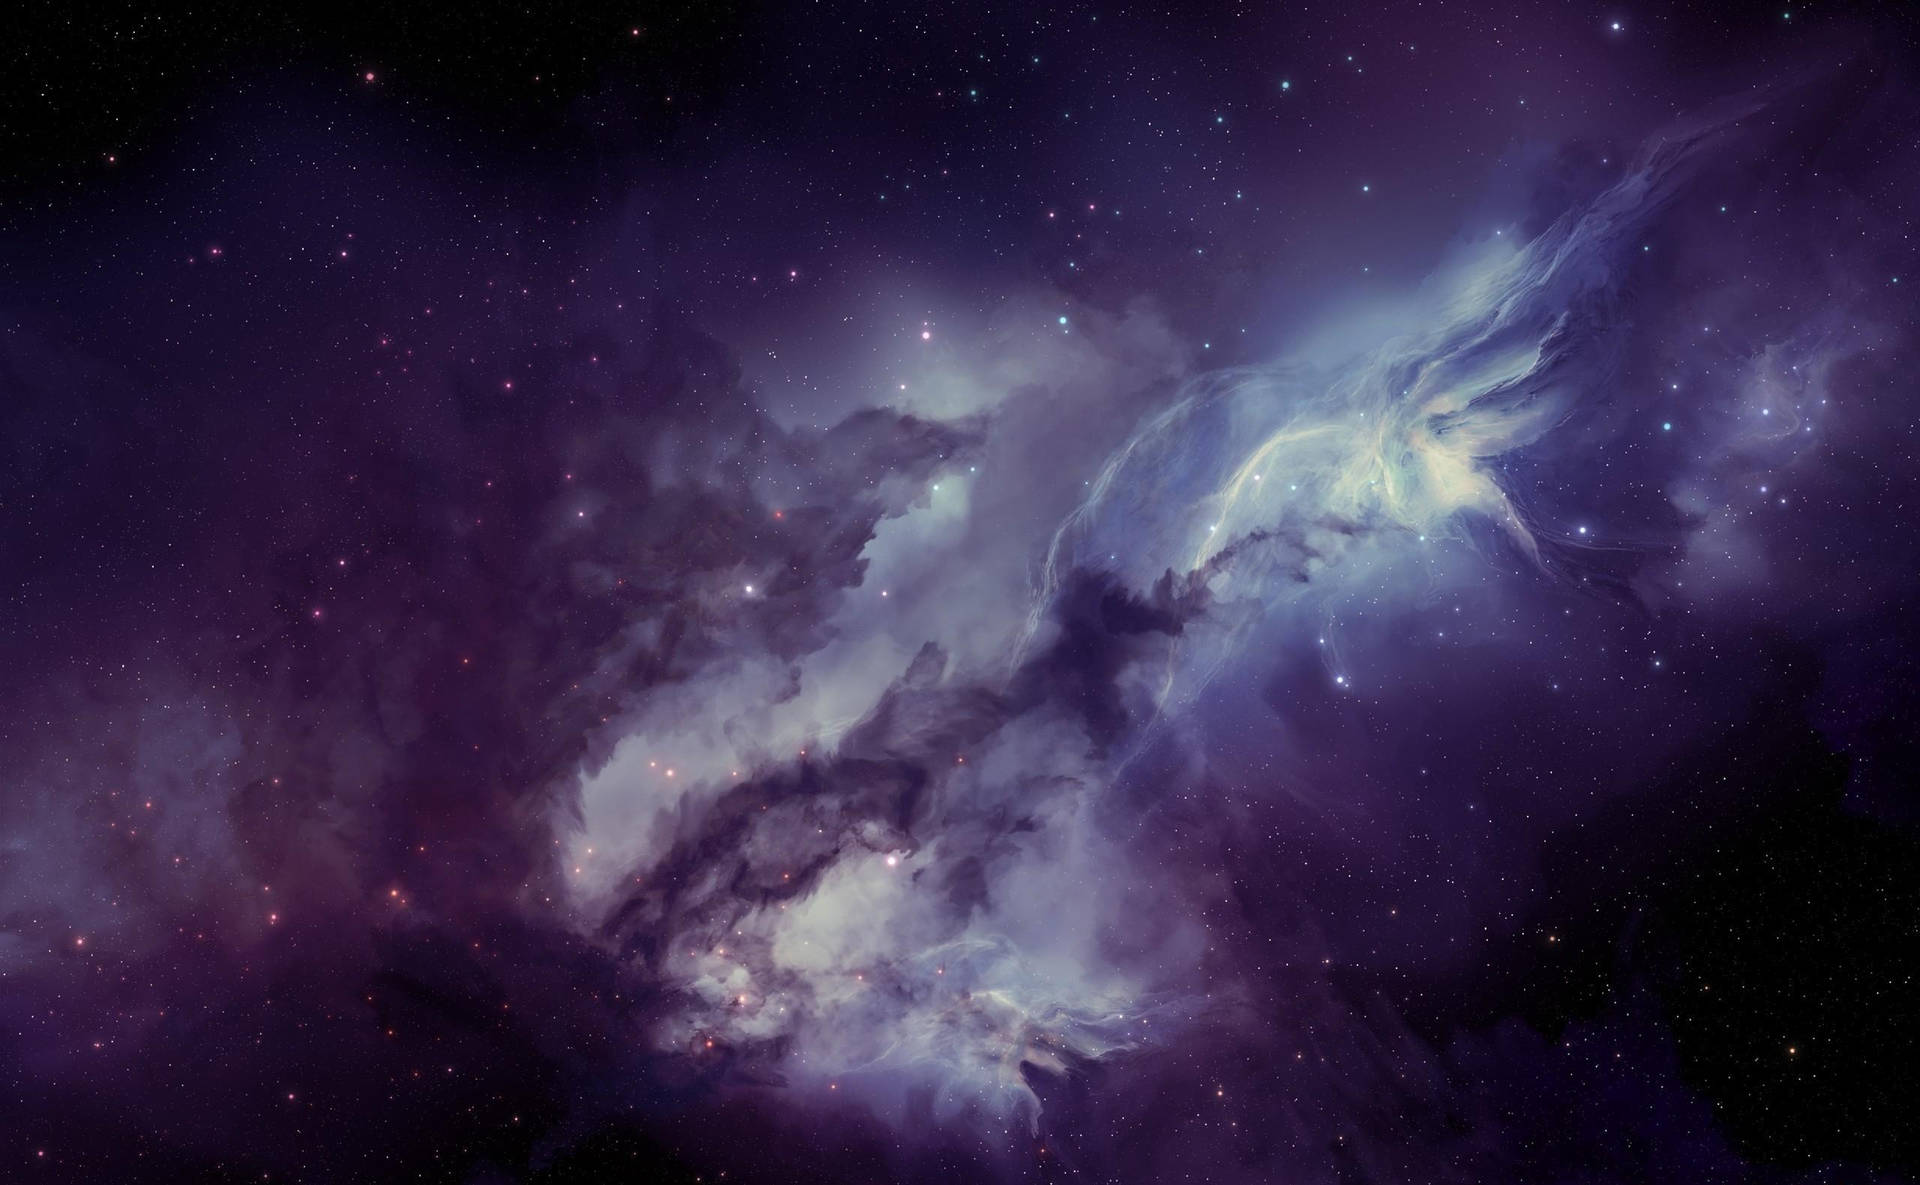 'the Brightest Universe: A Colorful Purple Galaxy' Wallpaper